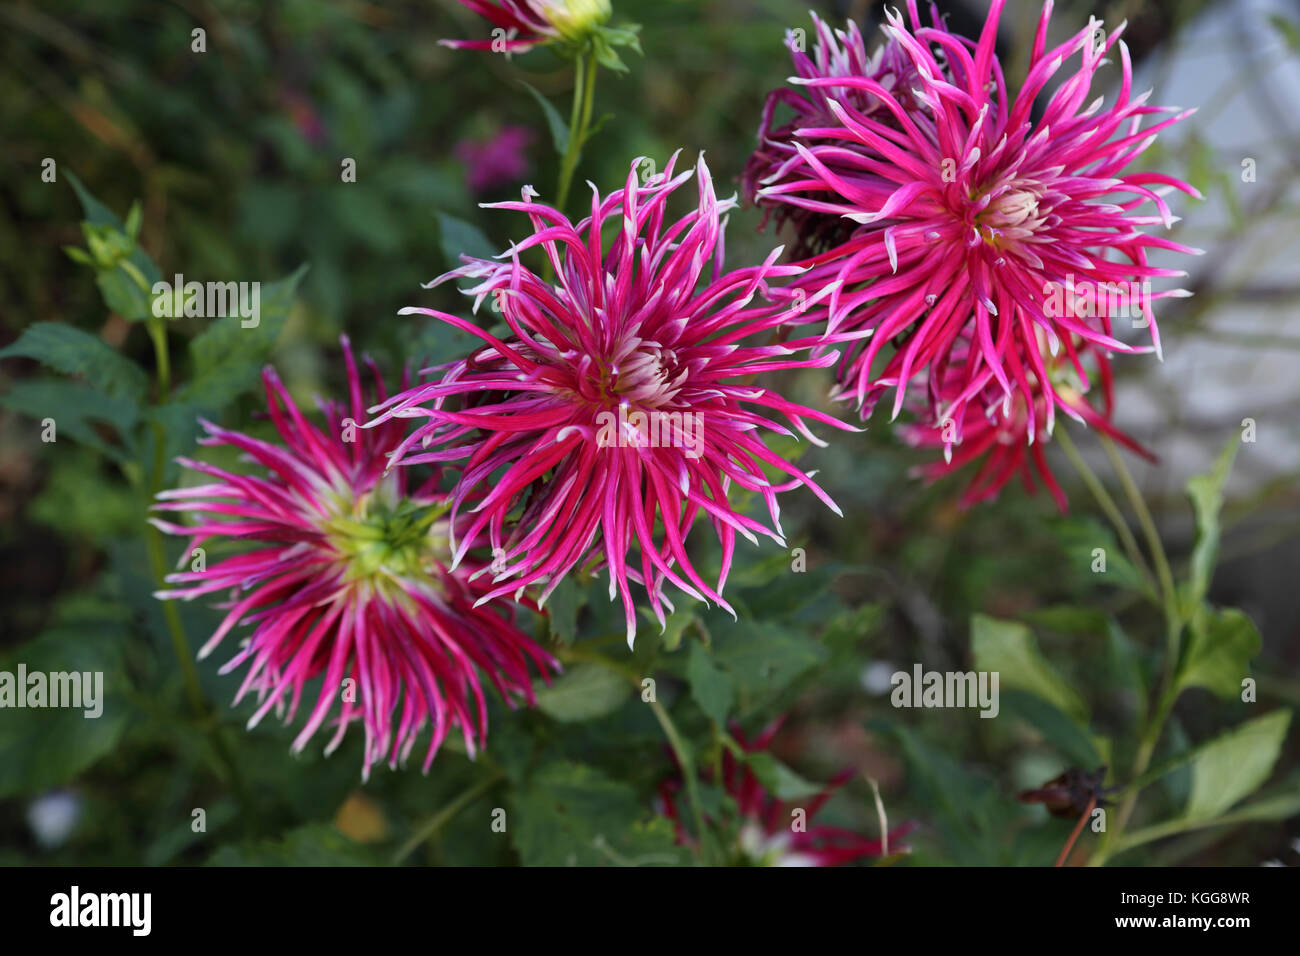 Pink Spider Dahlia Flower in Garden Surrey England Stock Photo